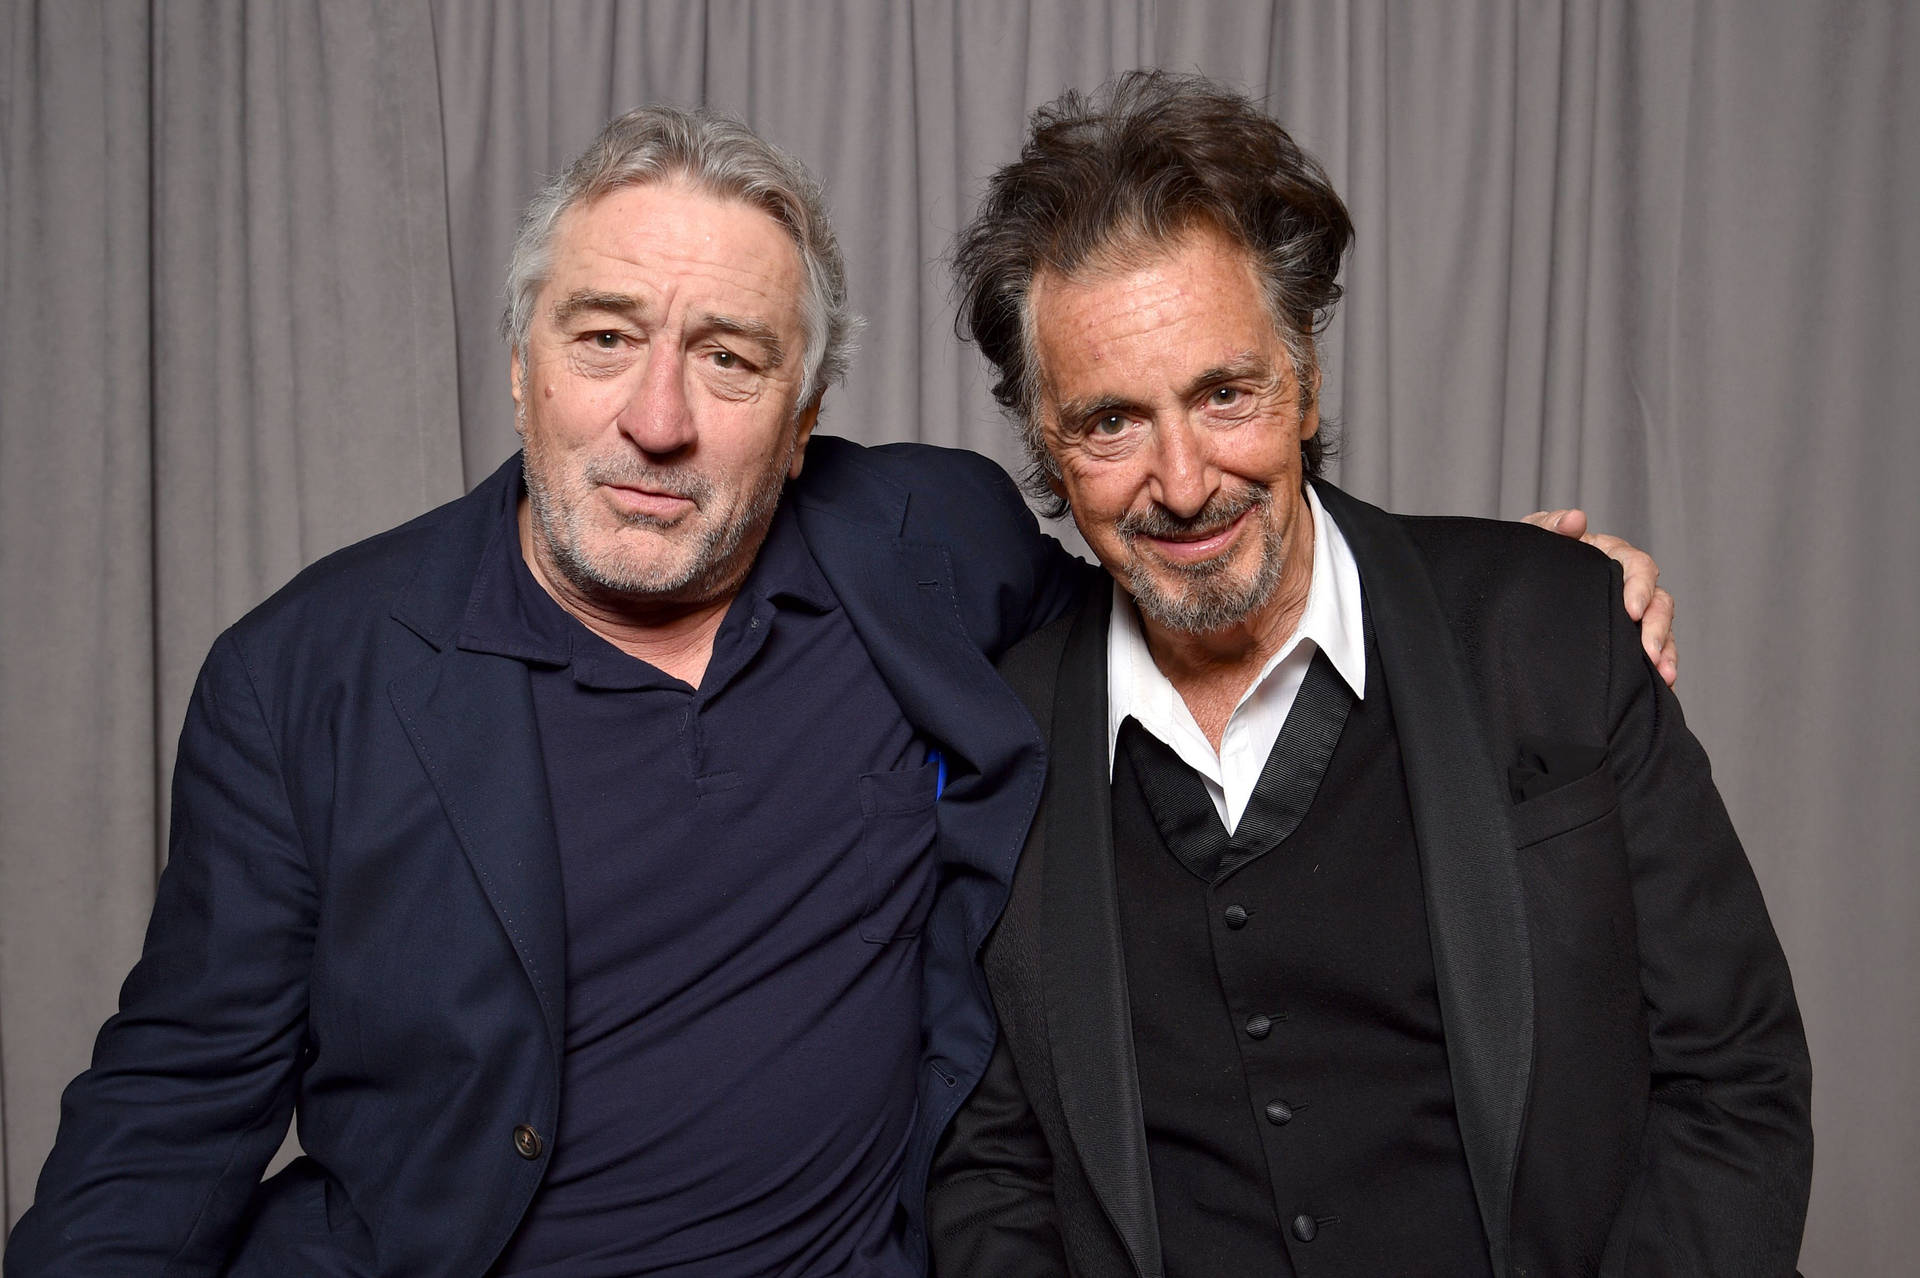 Robert De Niro With Al Pacino Background